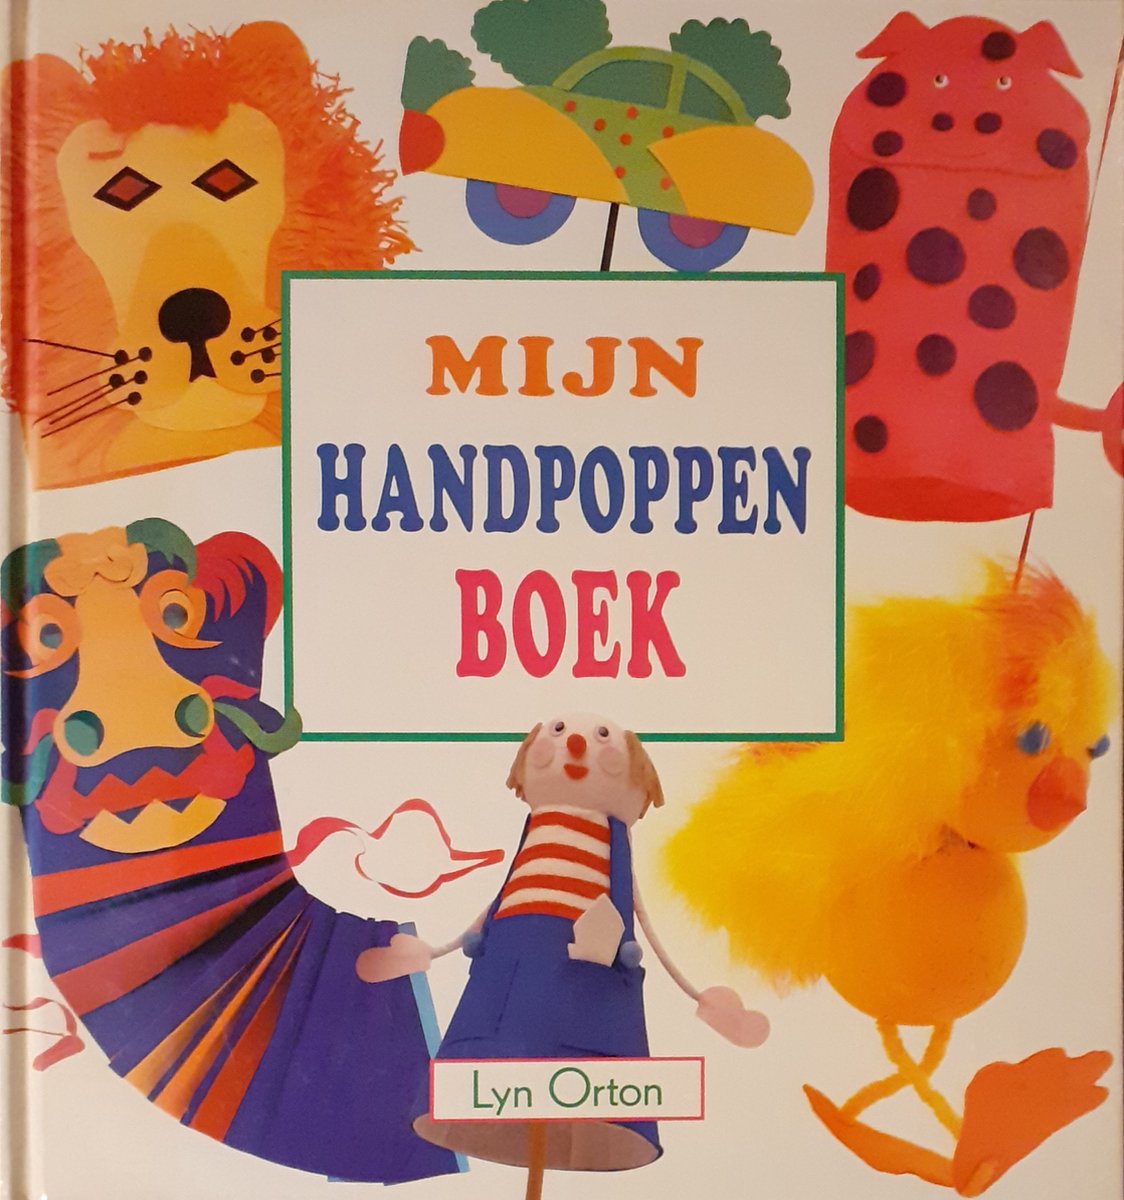 Mijn handpoppenboek